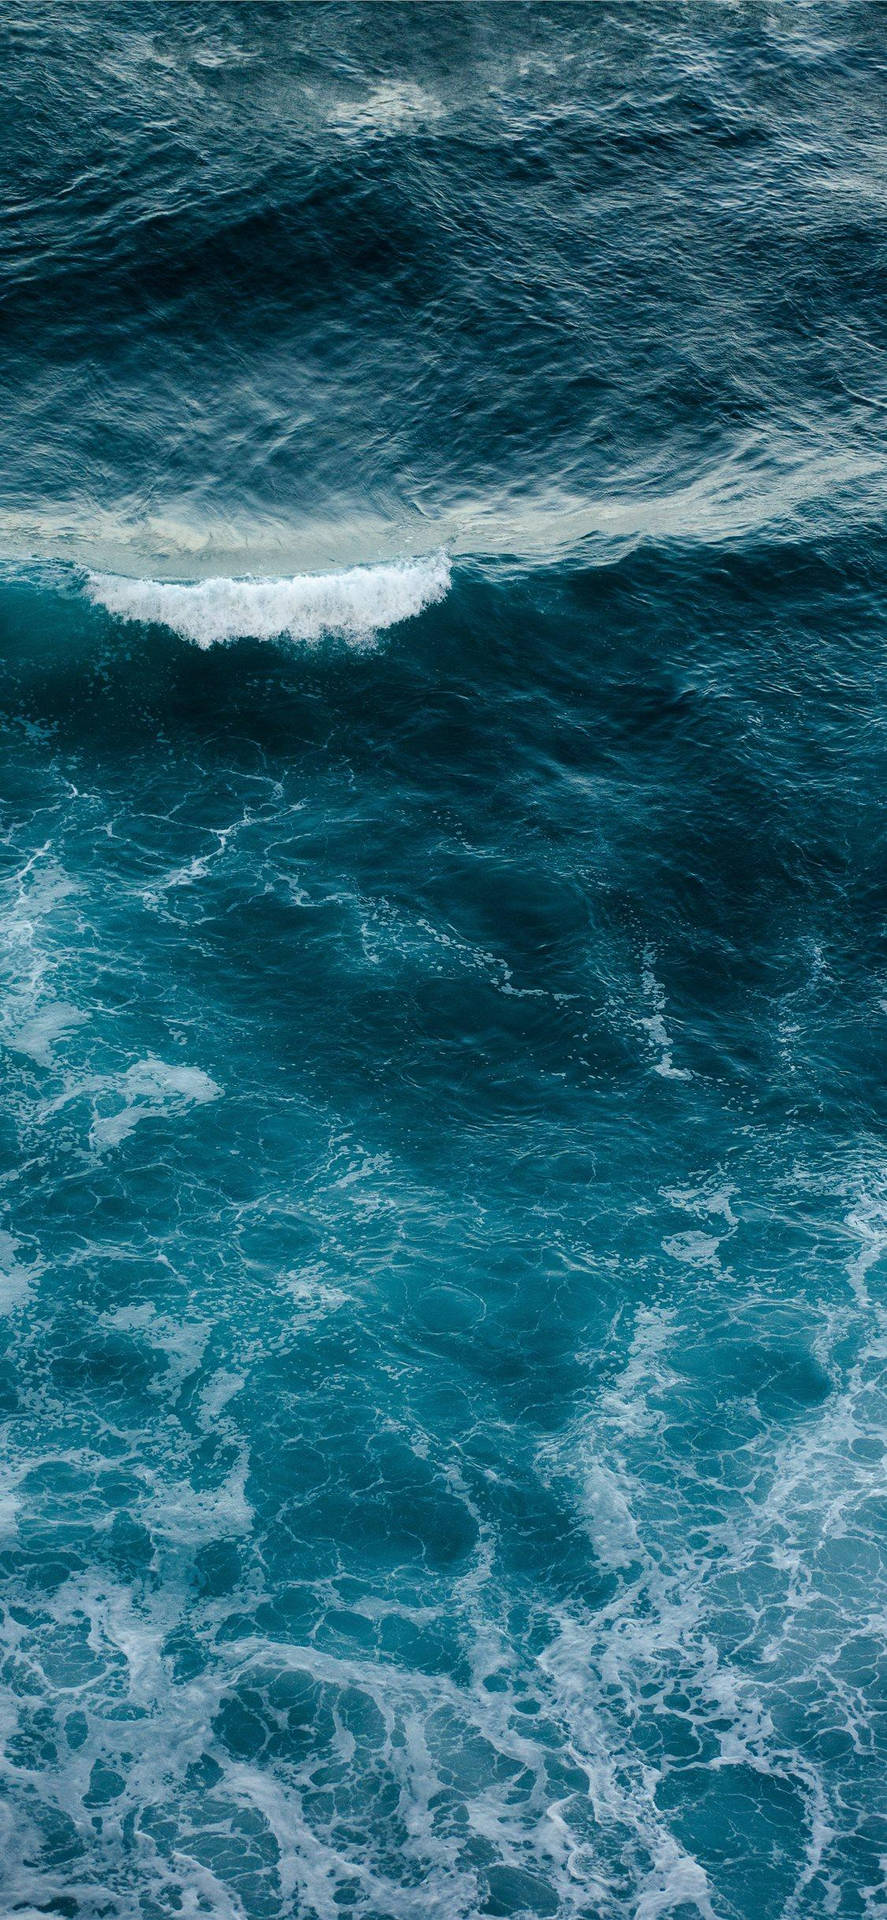 Free iPhone Xs Ocean Wallpaper Downloads, iPhone Xs Ocean Wallpaper for FREE